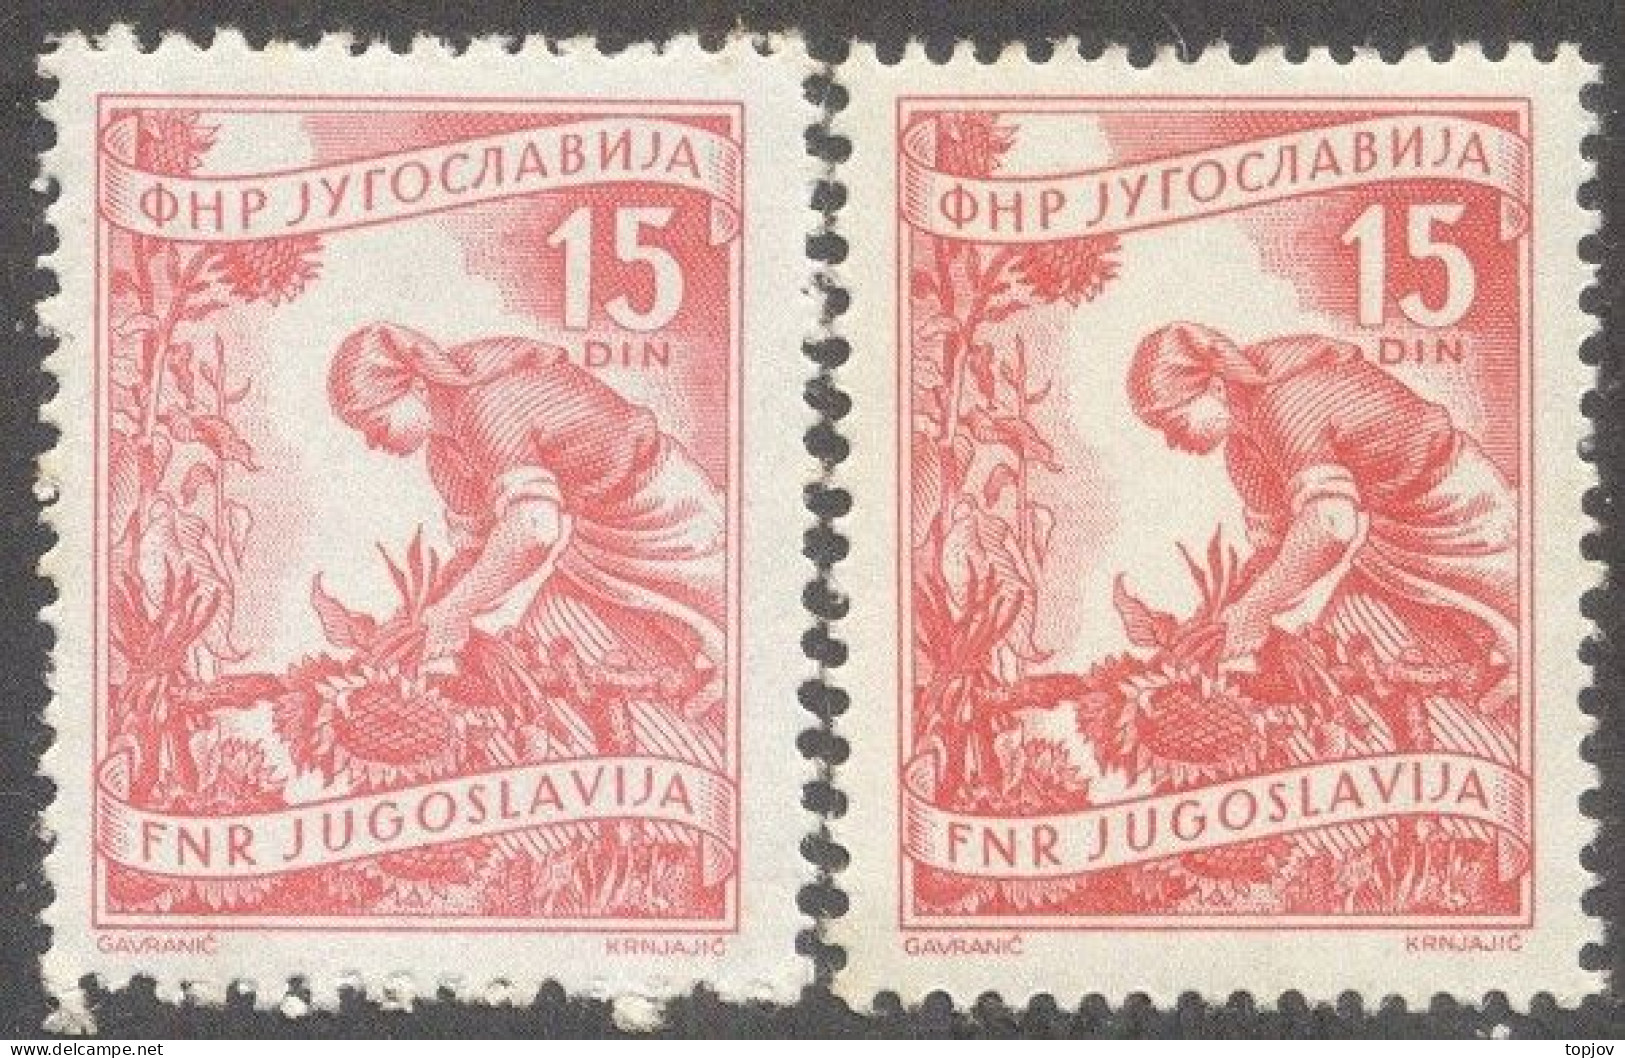 JUGOSLAVIA - ERROR COLOR + WHITE AND YELLOW RUBBER  - 3nd INDUSTRY  15 Din - 1952 - Non Dentelés, épreuves & Variétés